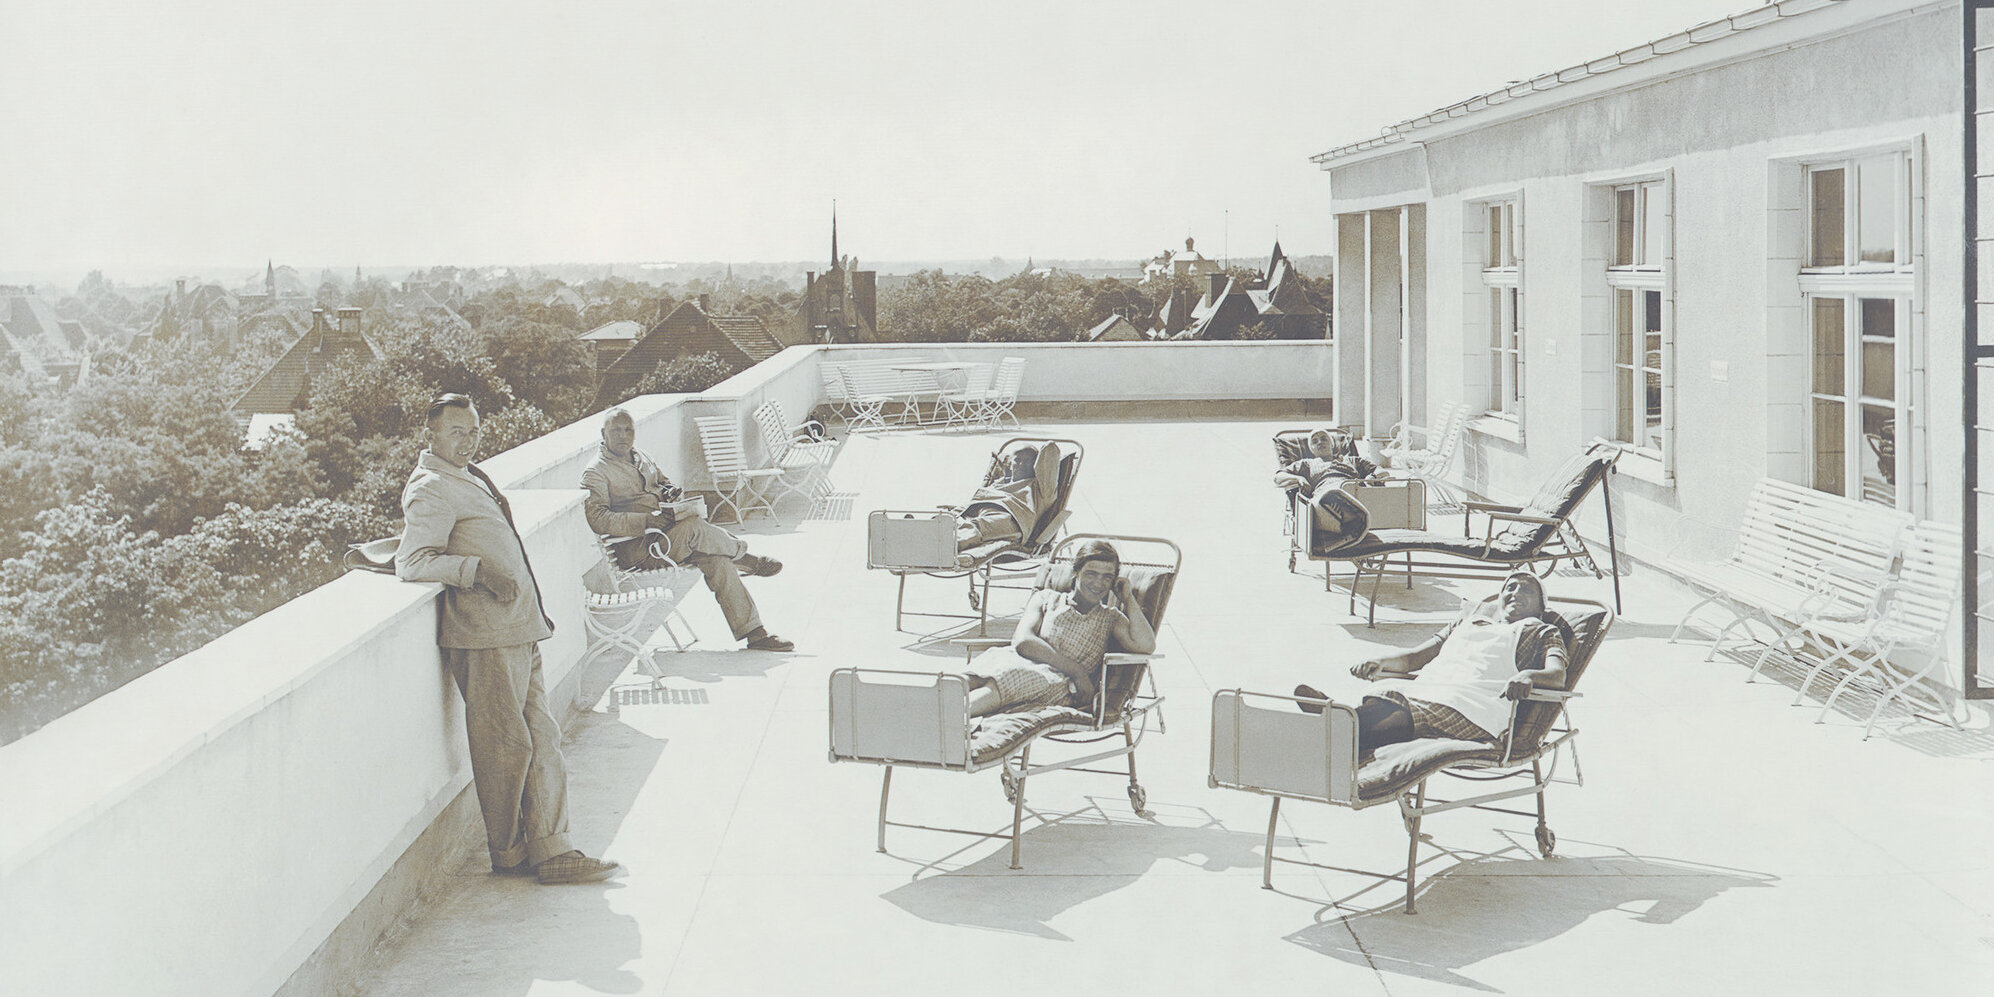 Vier Patientinnen im Liegestuhl auf der Dachterrasse. Ein Mann steht am Rand des Daches und ein Mann sitzt auf einem Stuhl.